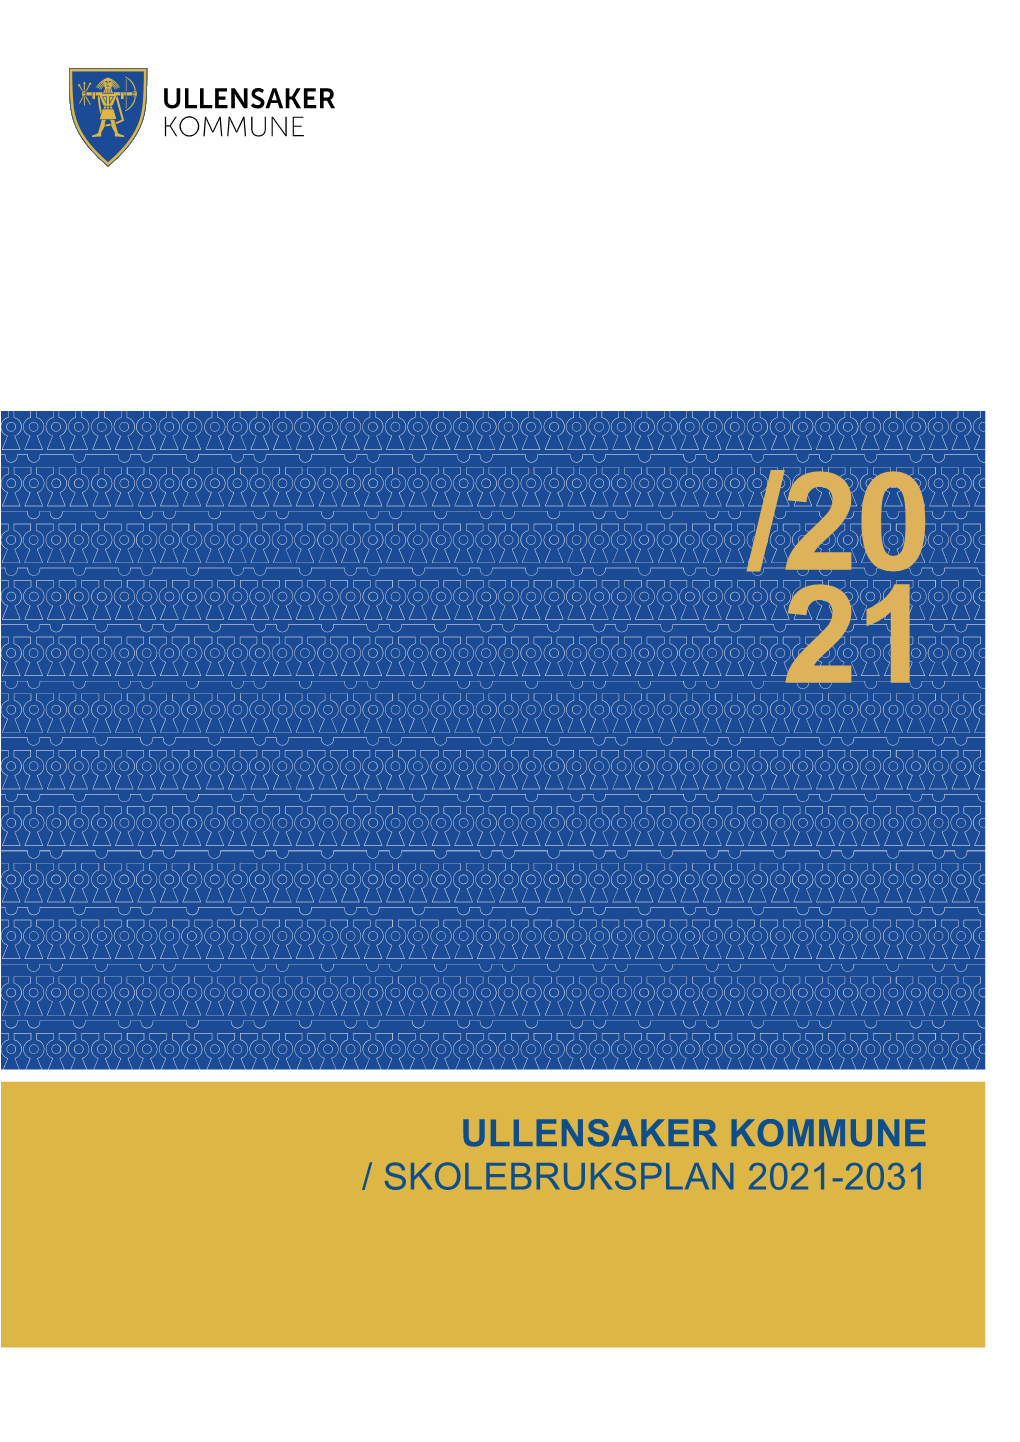 Ullensaker Kommune / Skolebruksplan 2021-2031